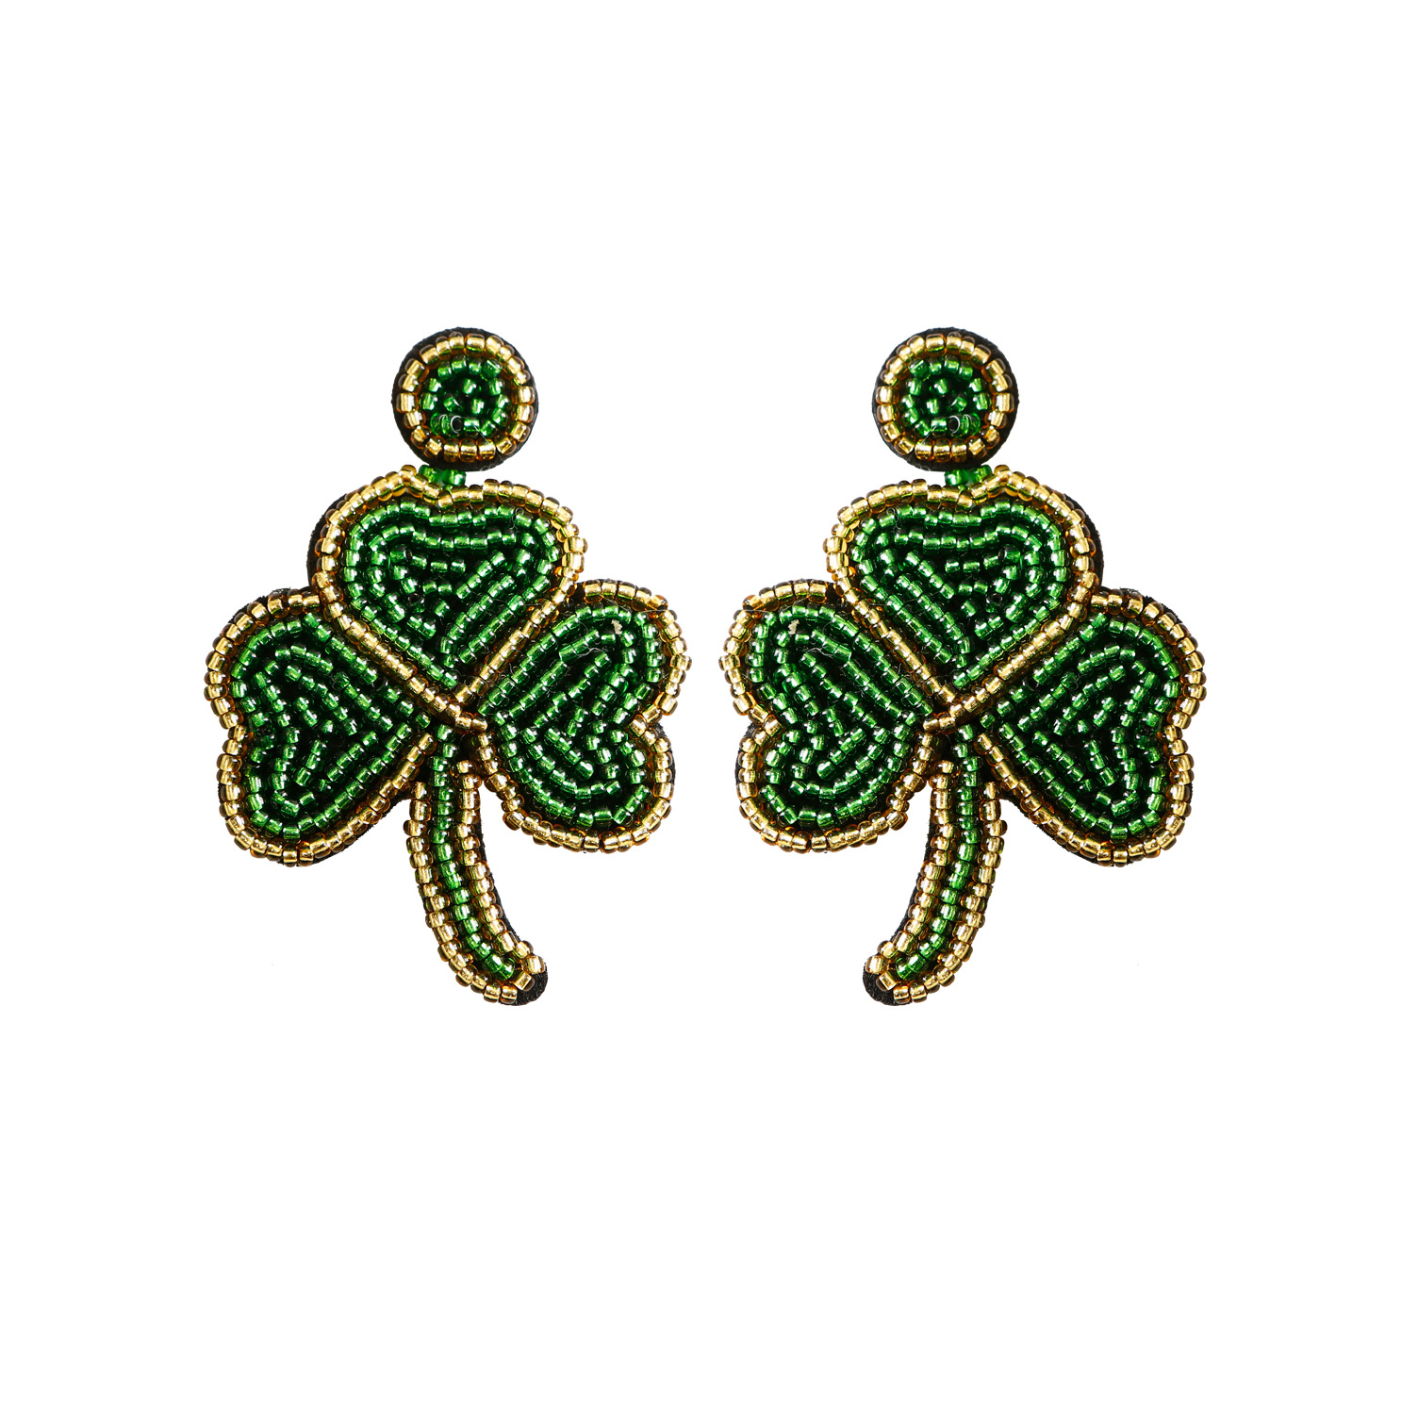 E68952 women's clover shaped earrings elegant jewelry stud earrings hand-woven ethnic style stud earrings